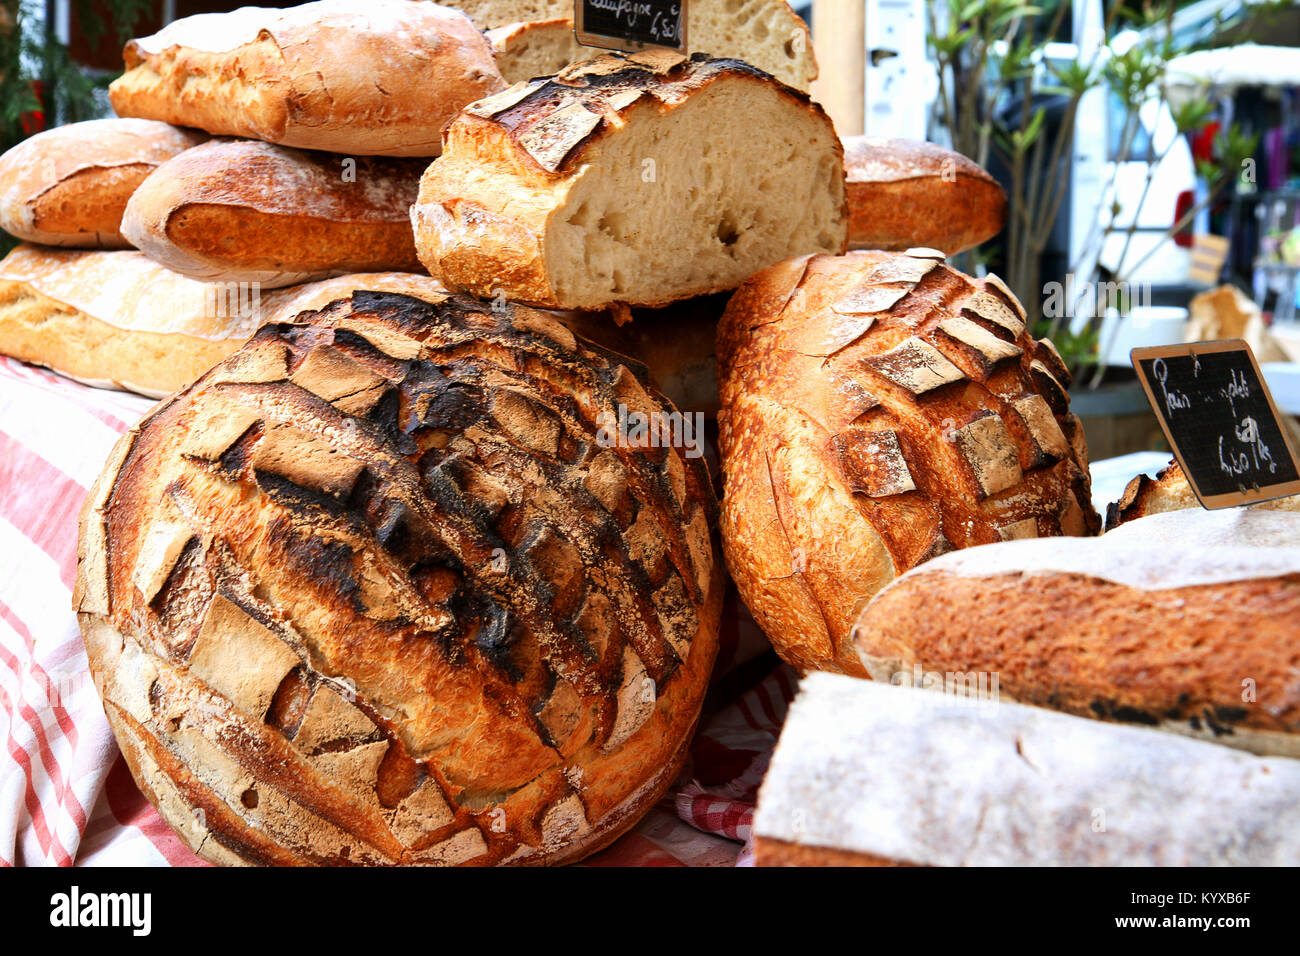 Frisches Brot auf einem Marktstand in der Provence, Frankreich. Nahaufnahme, runde Brote, Weizenbrote Stapel. Stockfoto